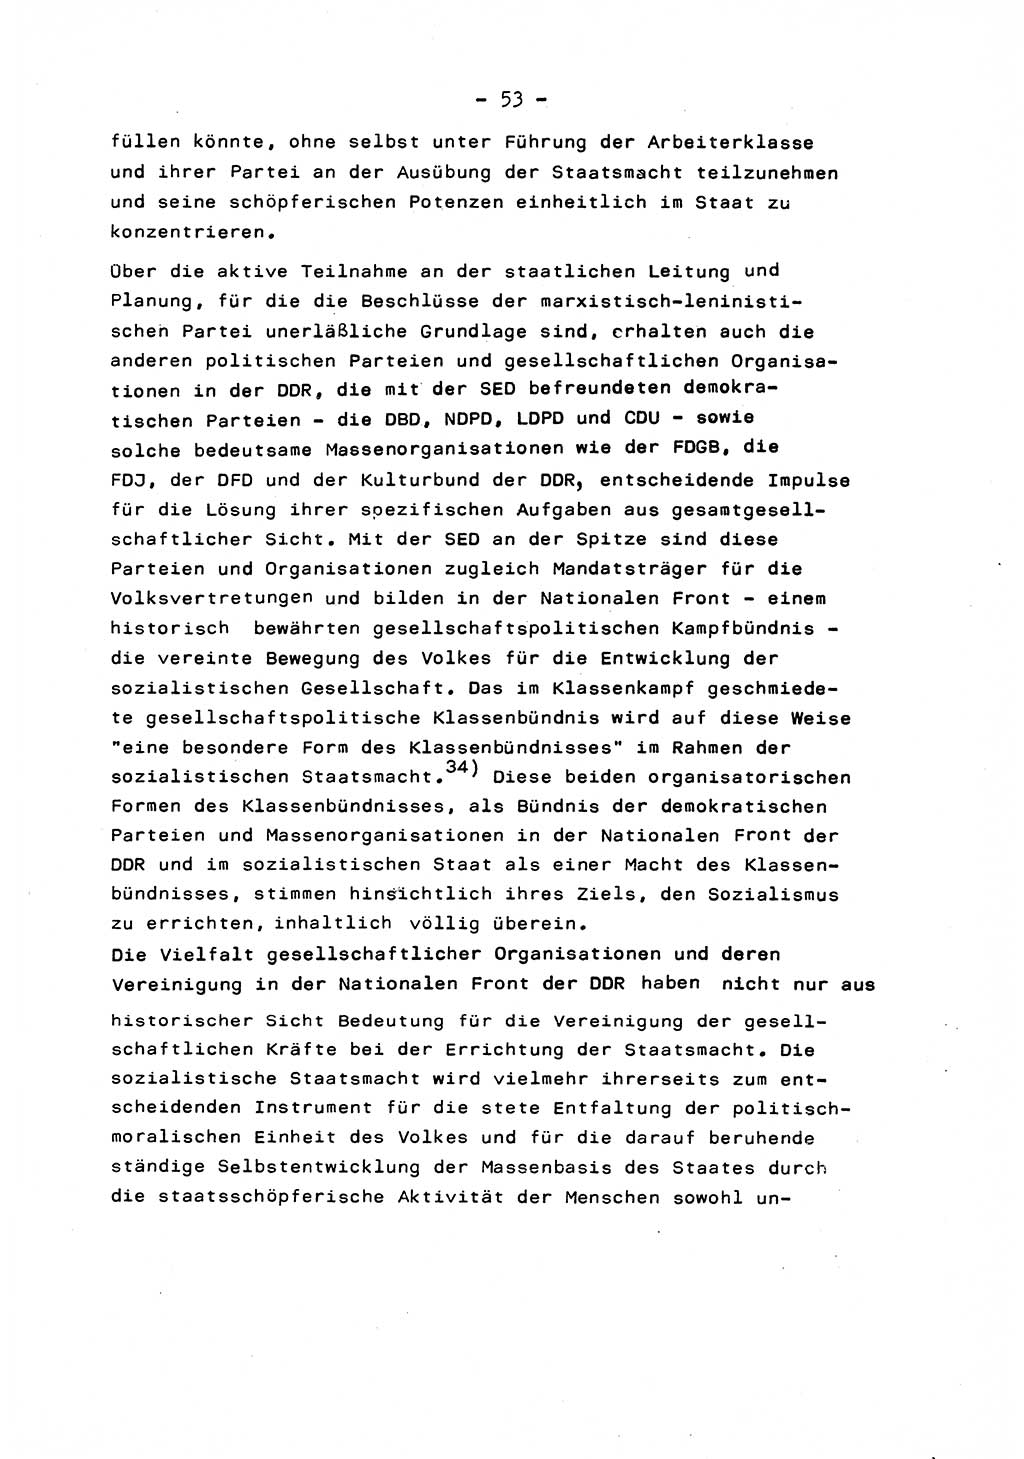 Marxistisch-leninistische Staats- und Rechtstheorie [Deutsche Demokratische Republik (DDR)] 1975, Seite 53 (ML St.-R.-Th. DDR 1975, S. 53)